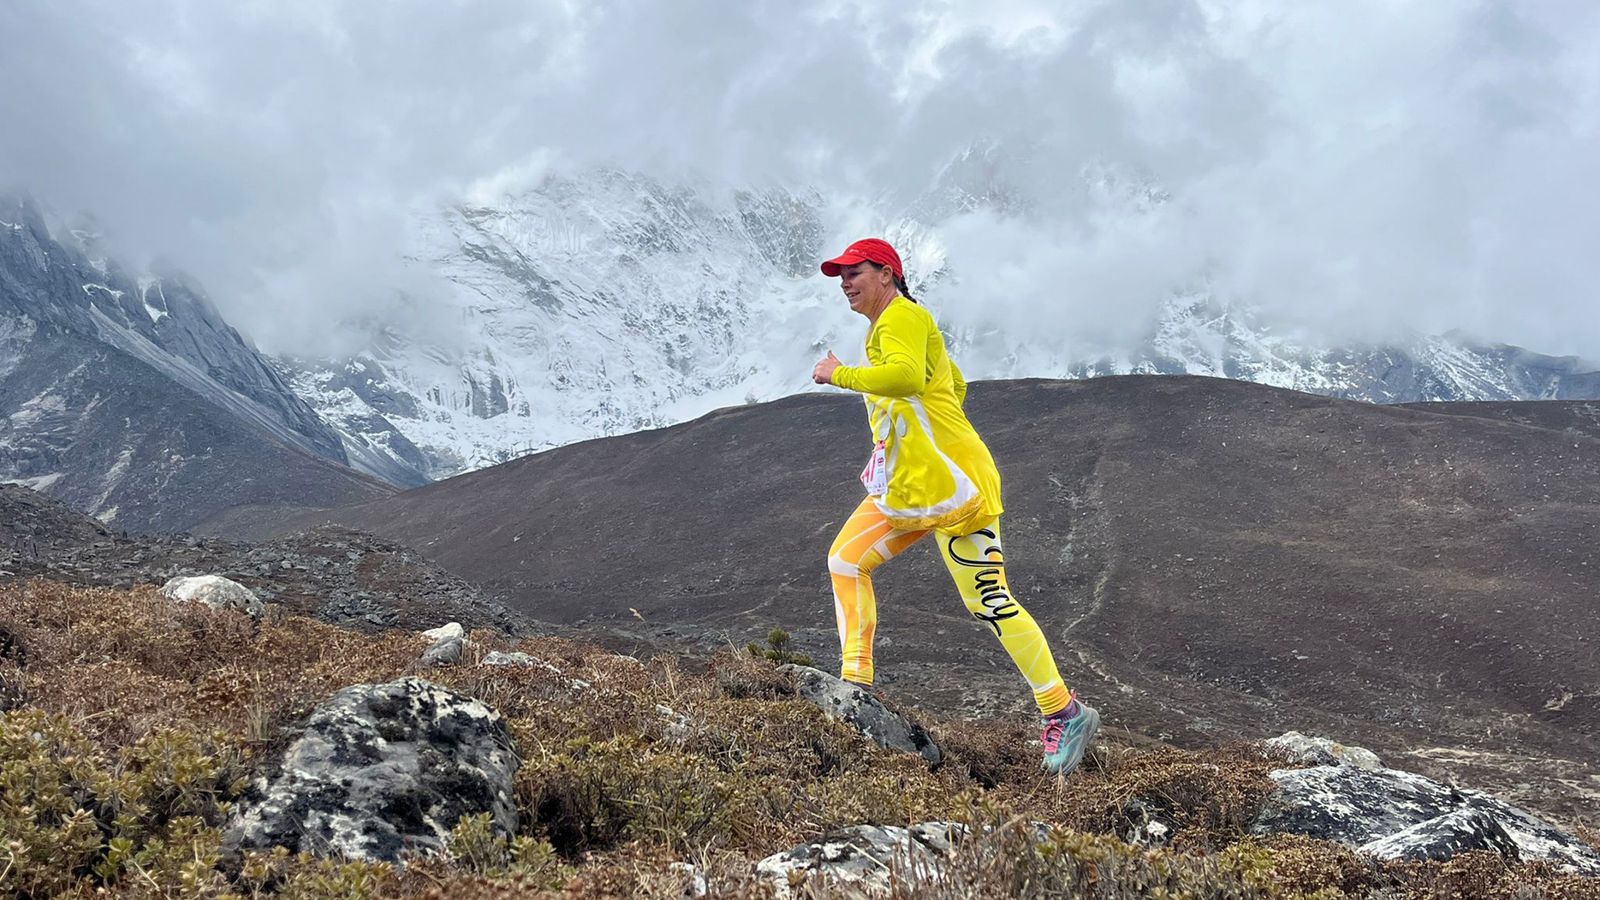 Бившият майор от армията Сали Ориндж ще пробяга маратона Еверест, облечена като лимон